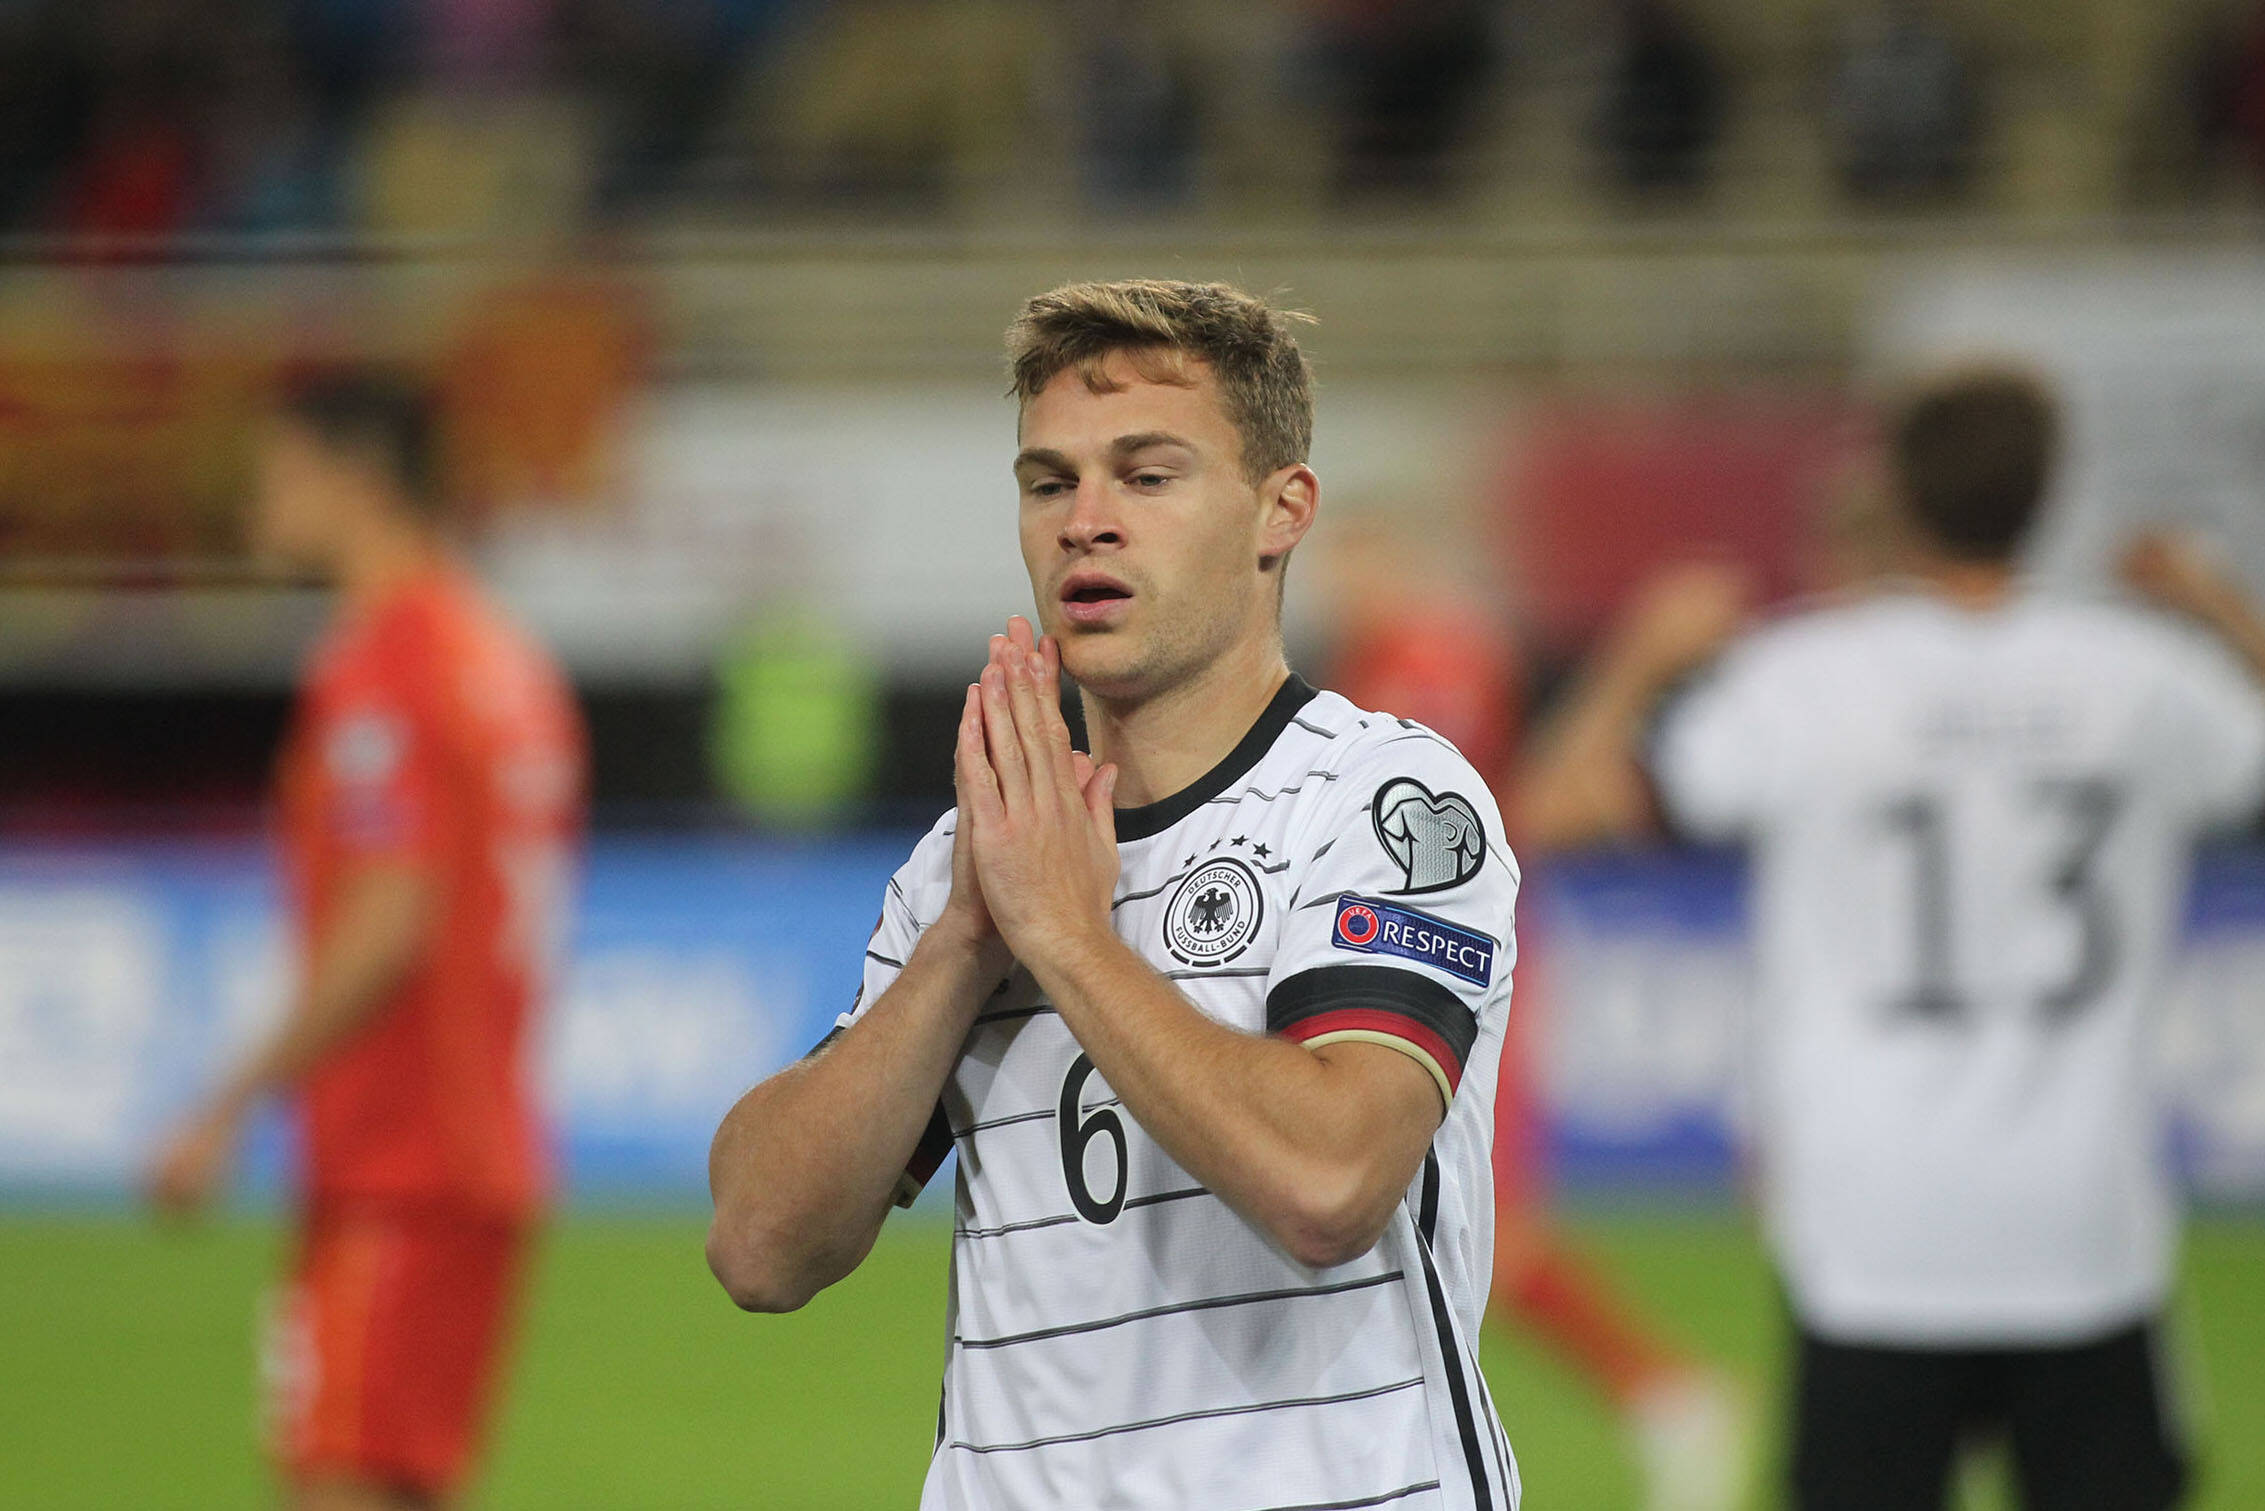 Trauer! Deutscher Fußball-Nationalspieler viel zu früh gestorben! Die Fußballwelt trauert